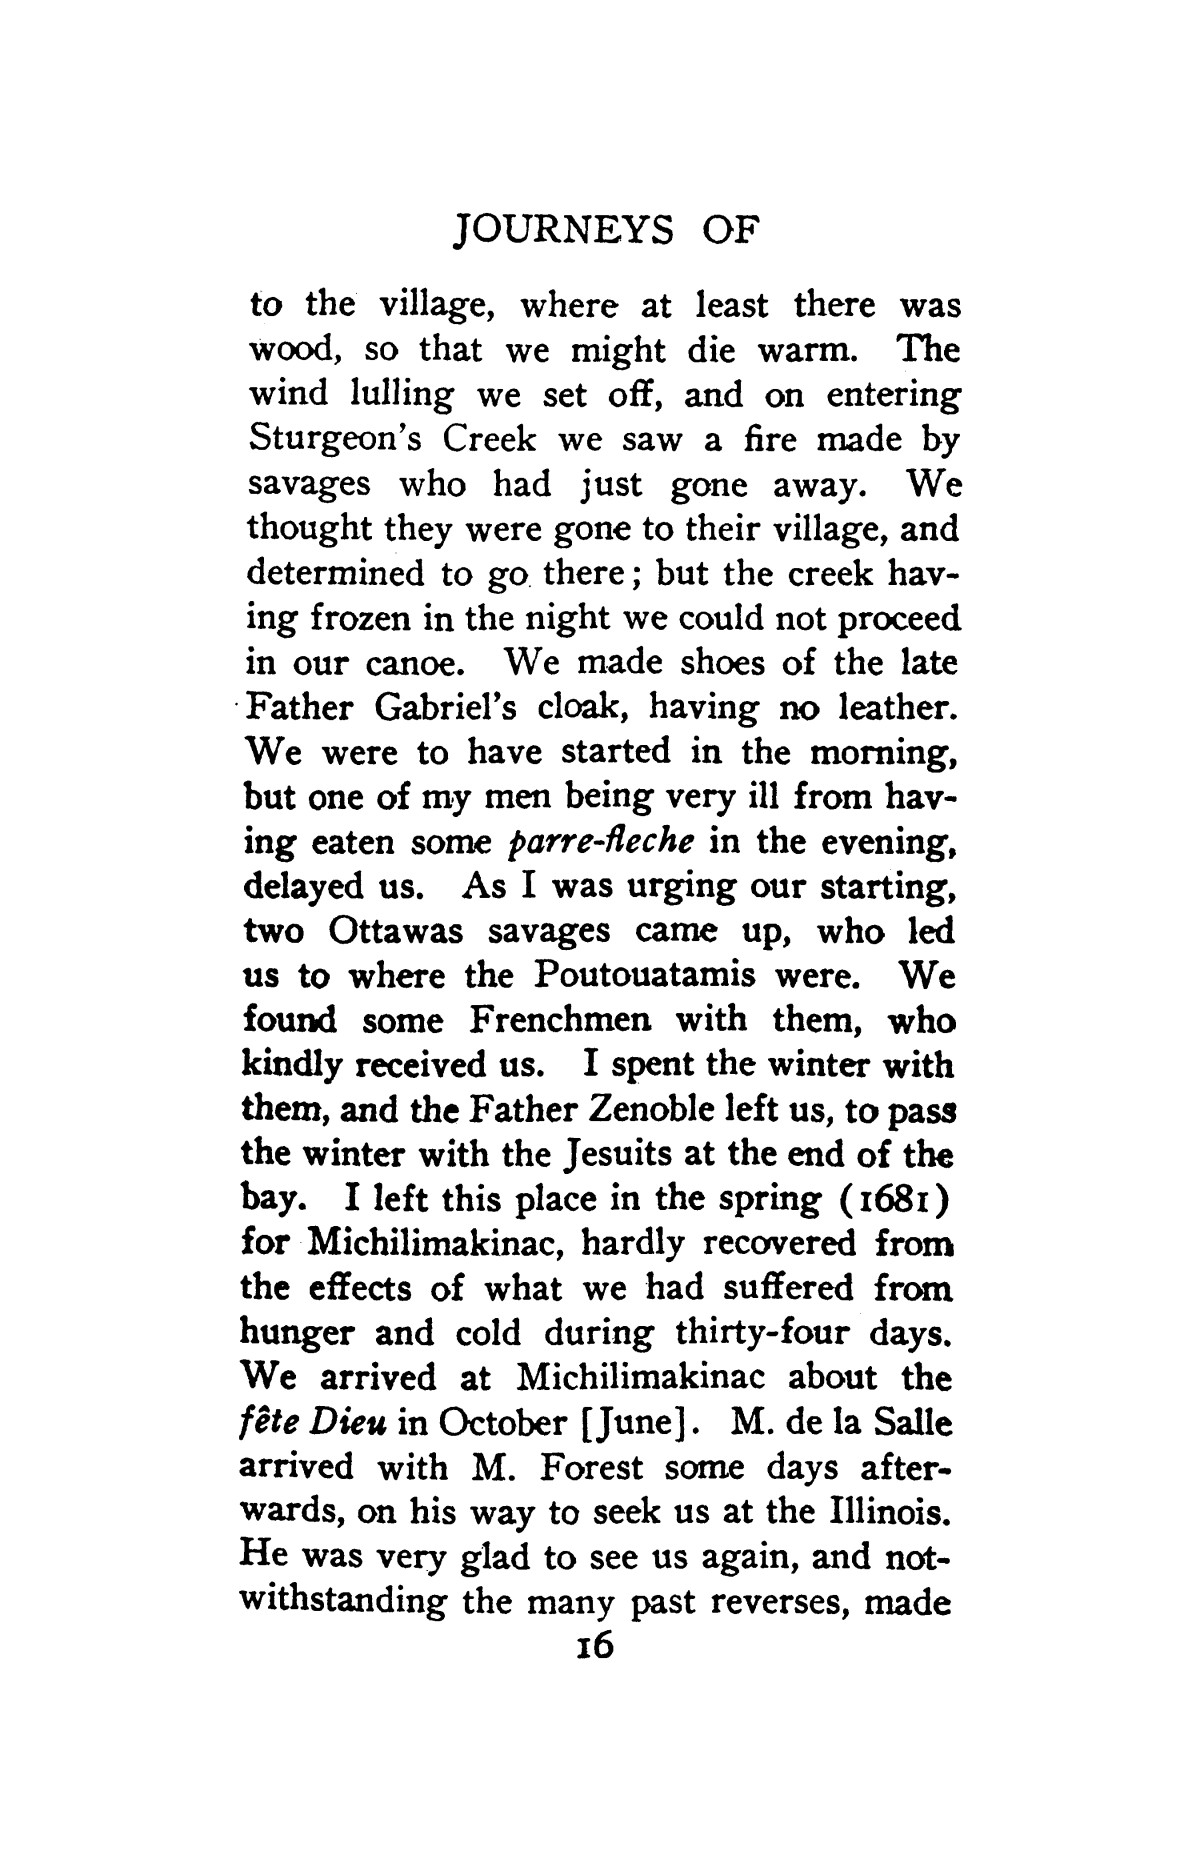 The Journeys of Rene Robert Cavelier, Sieur de La Salle, Volume 1
                                                
                                                    [Sequence #]: 46 of 330
                                                